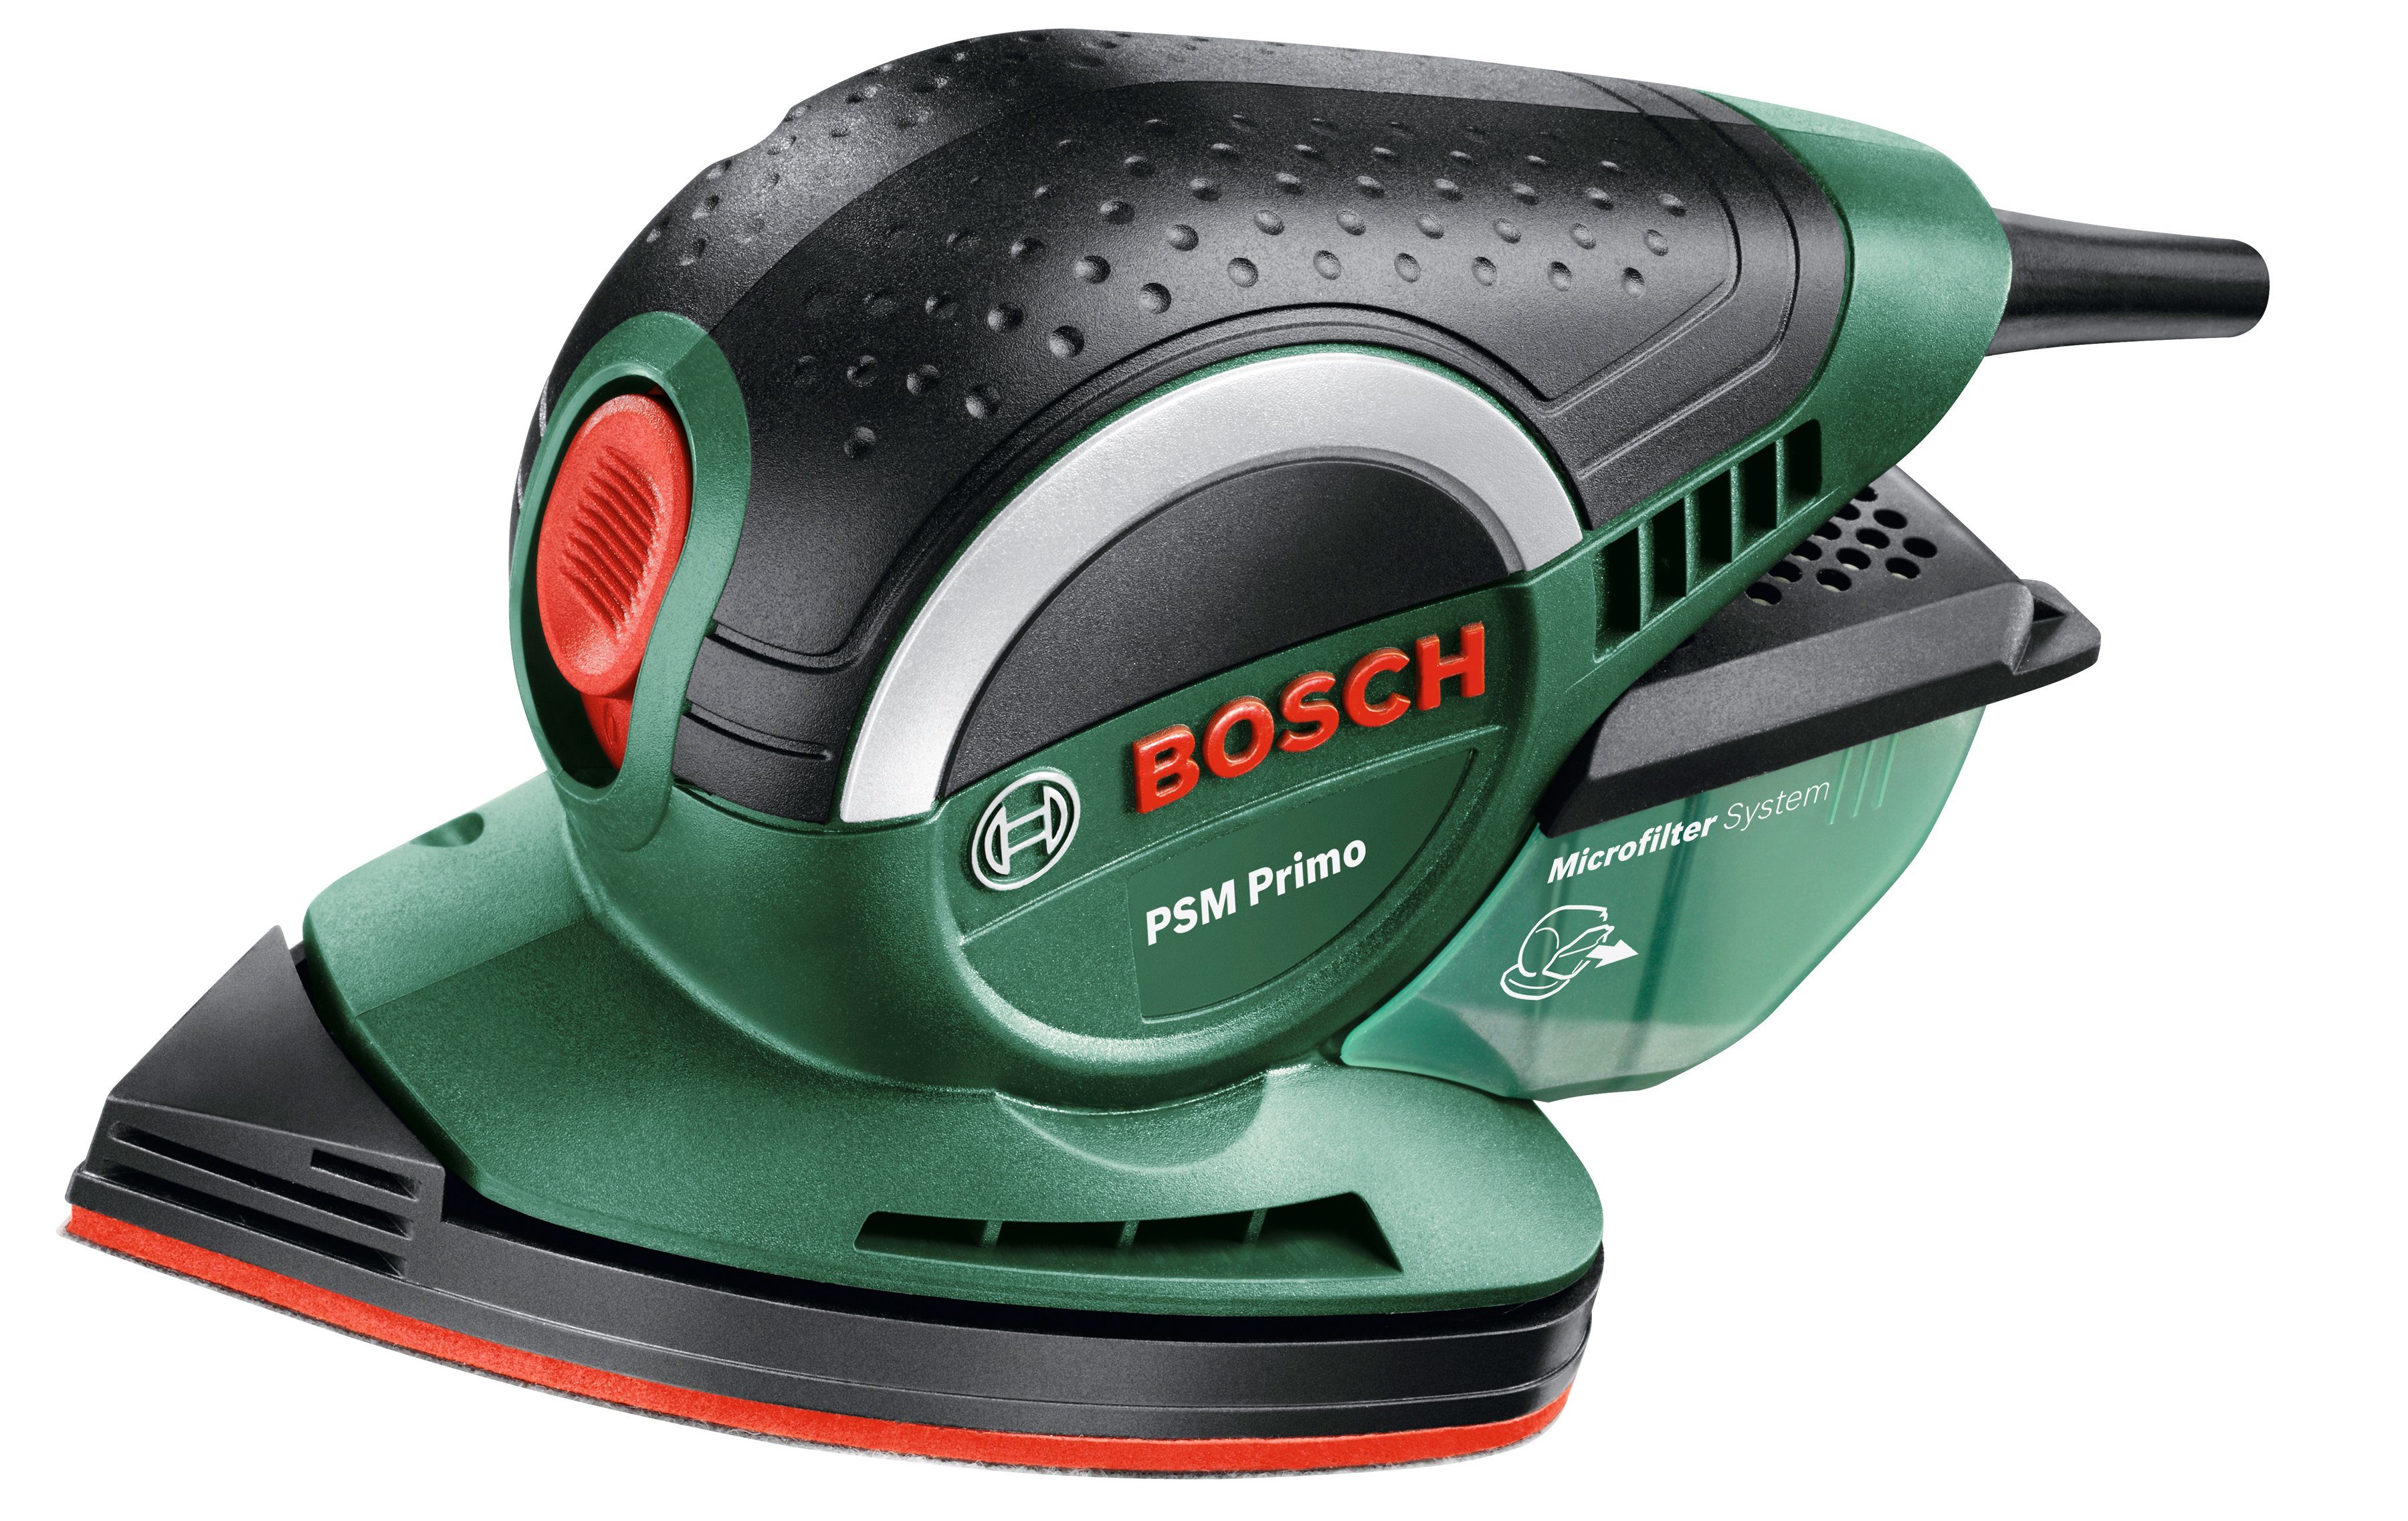 Bosch Home & Garden Multischleifer PSM Primo, 24000 U/min